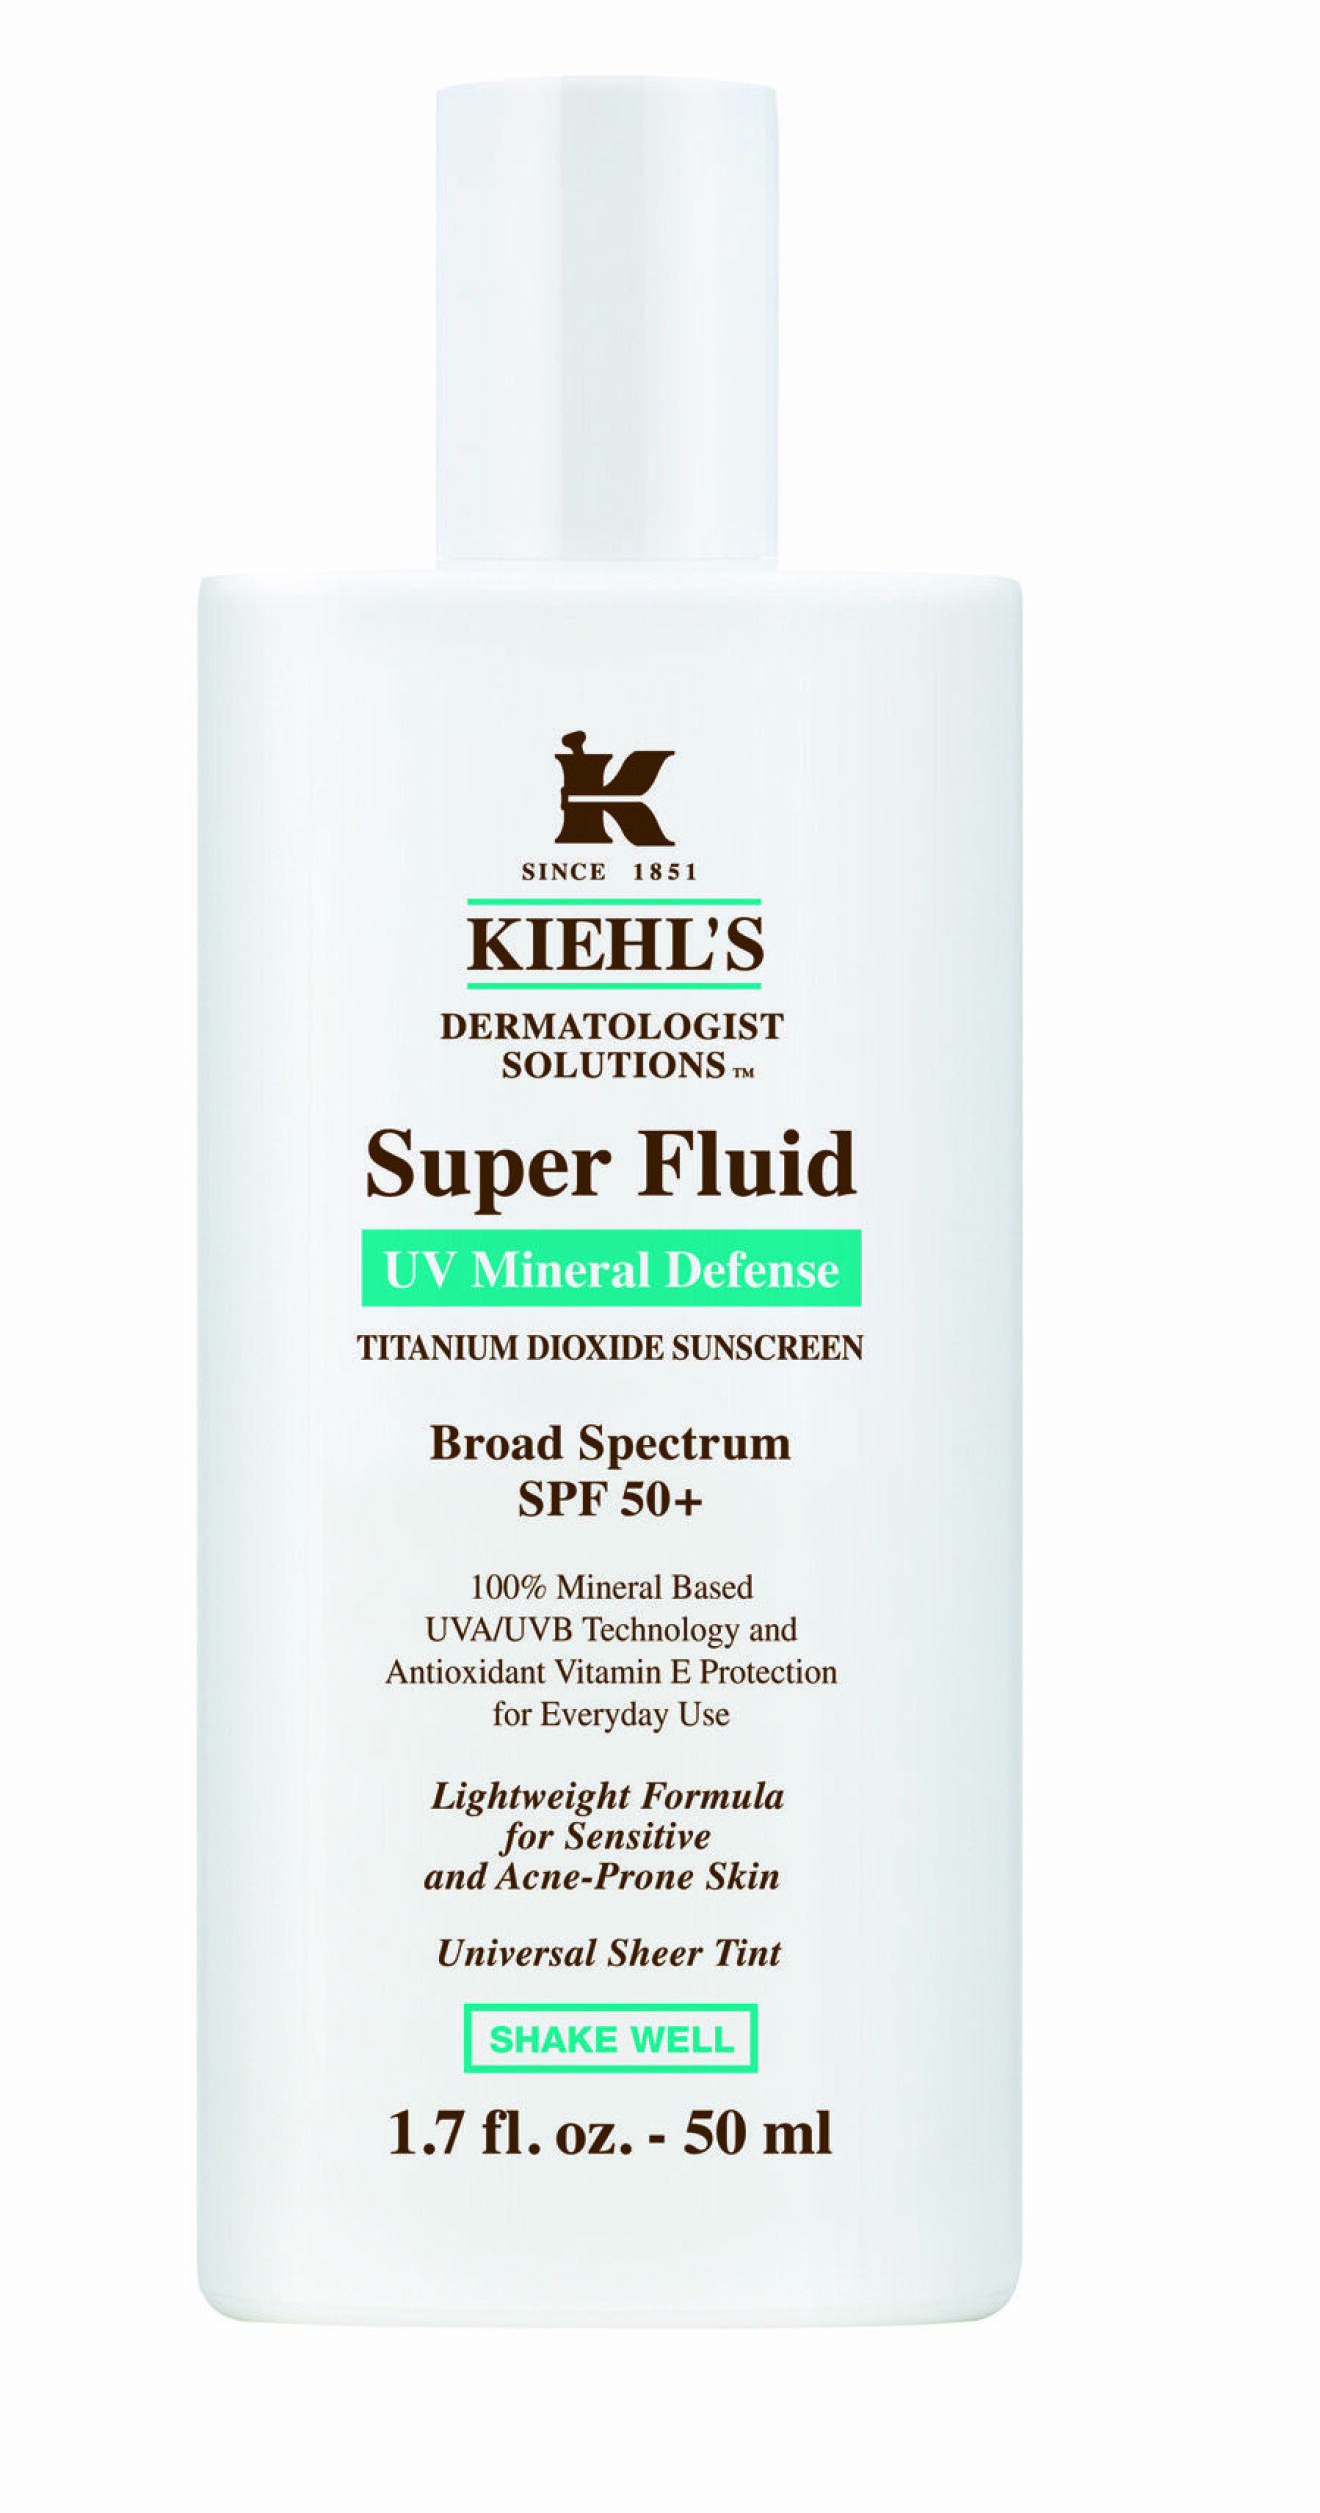 Kiehls super fluid